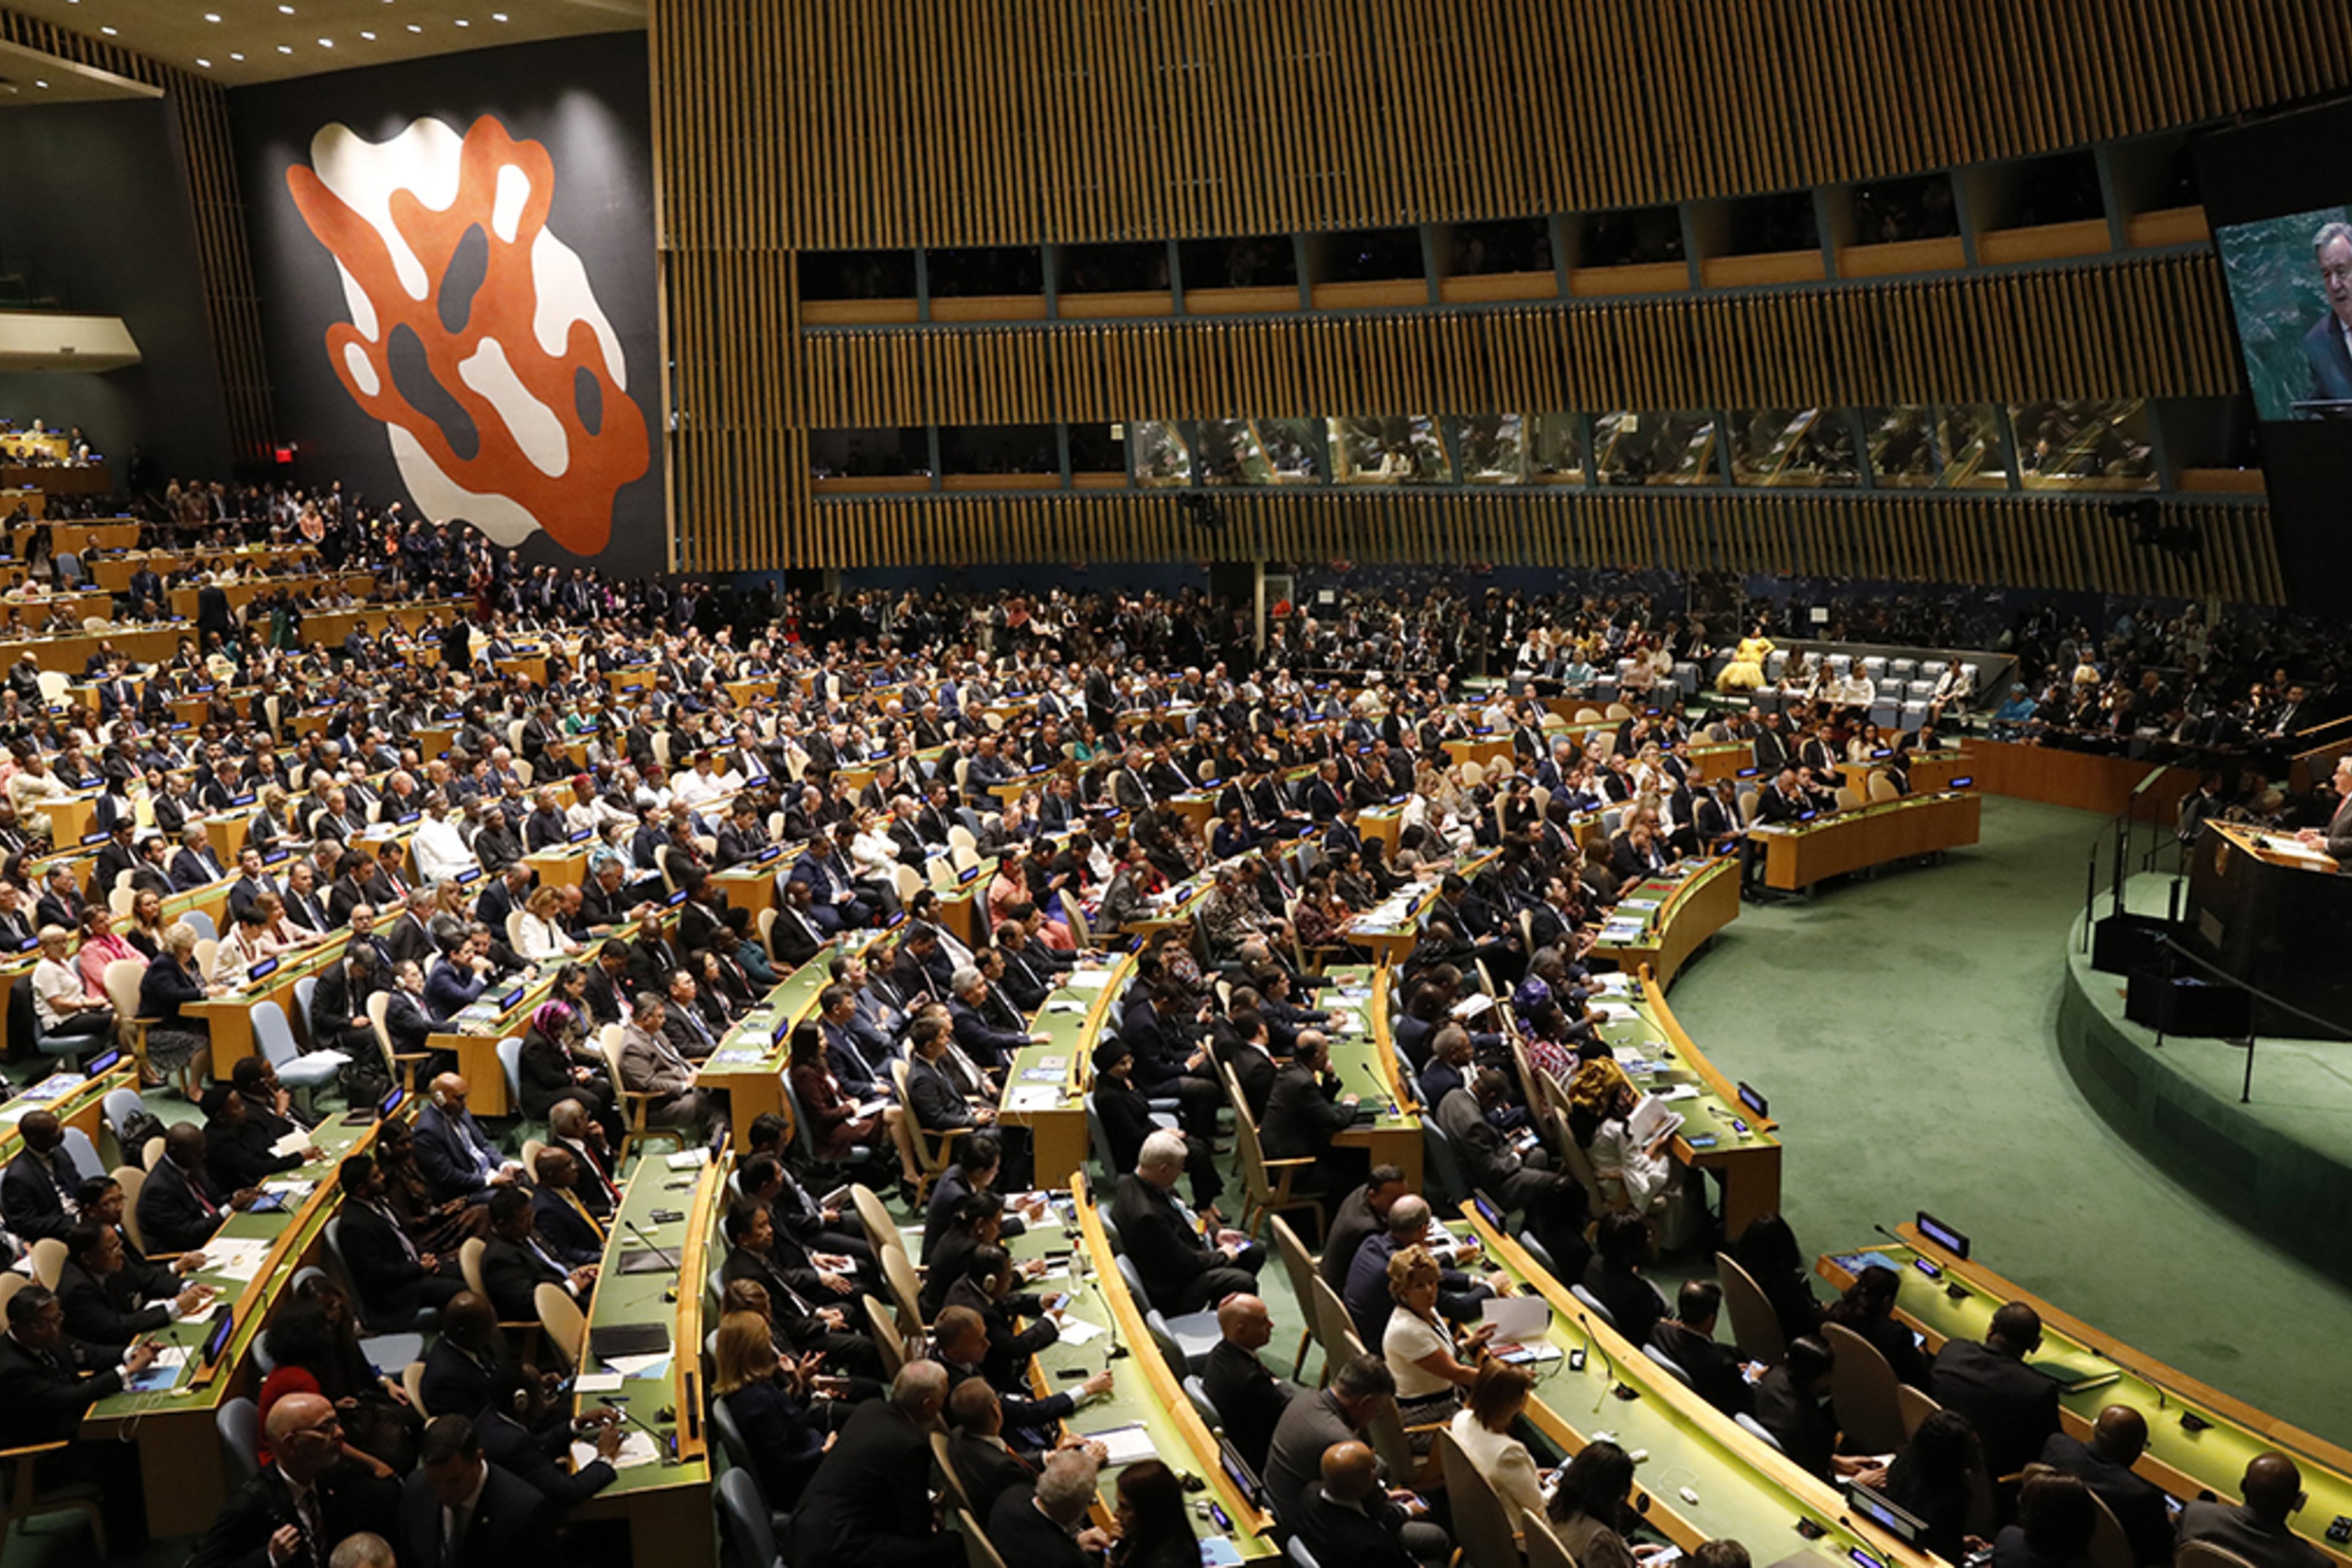 Е оон. Генеральная Ассамблея ООН Нью-Йорк. Генеральная Ассамблея ООН 2019. Зал заседания Генеральной Ассамблеи ООН. Заседание ООН 1992.